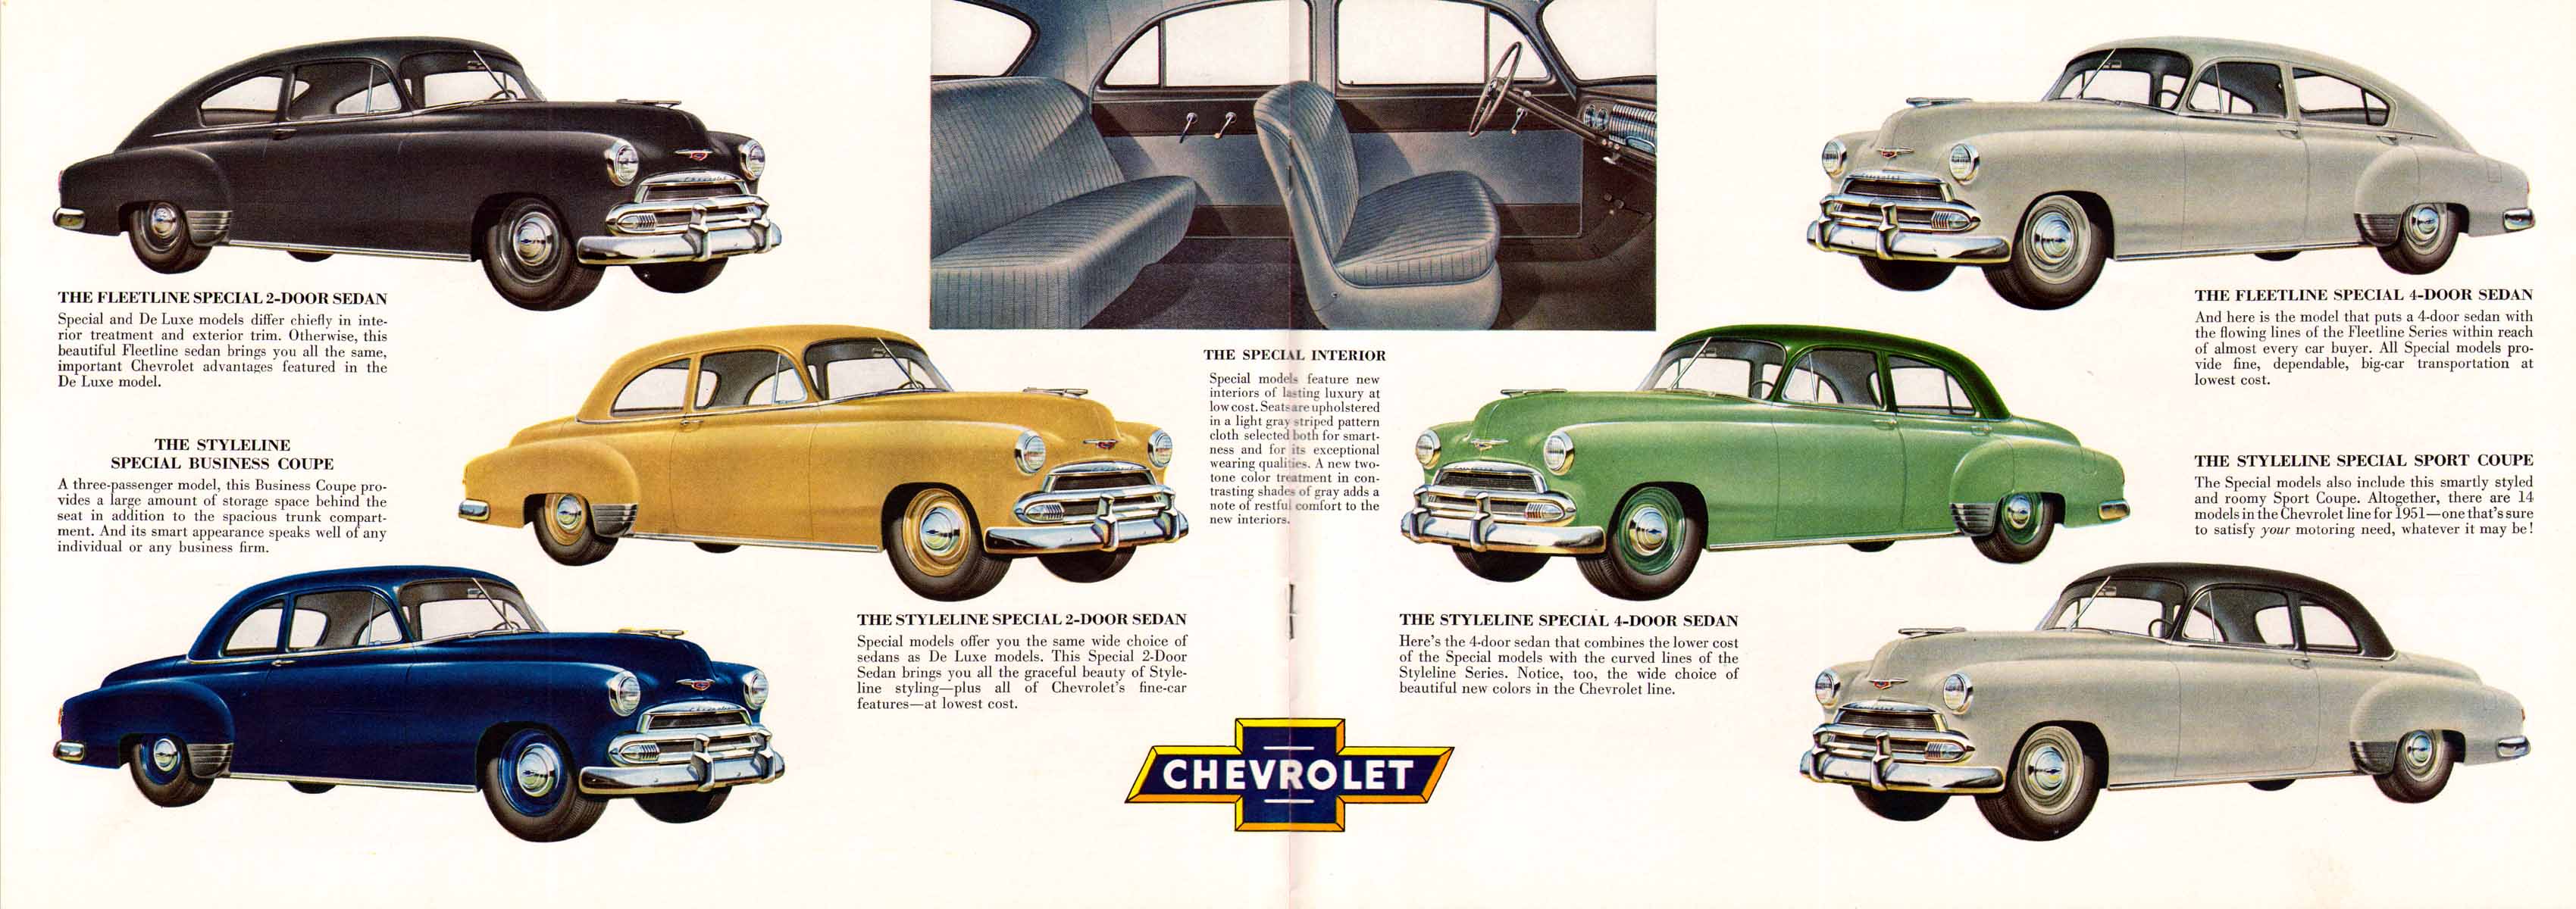 1951_Chevrolet_Full_Line-08-09